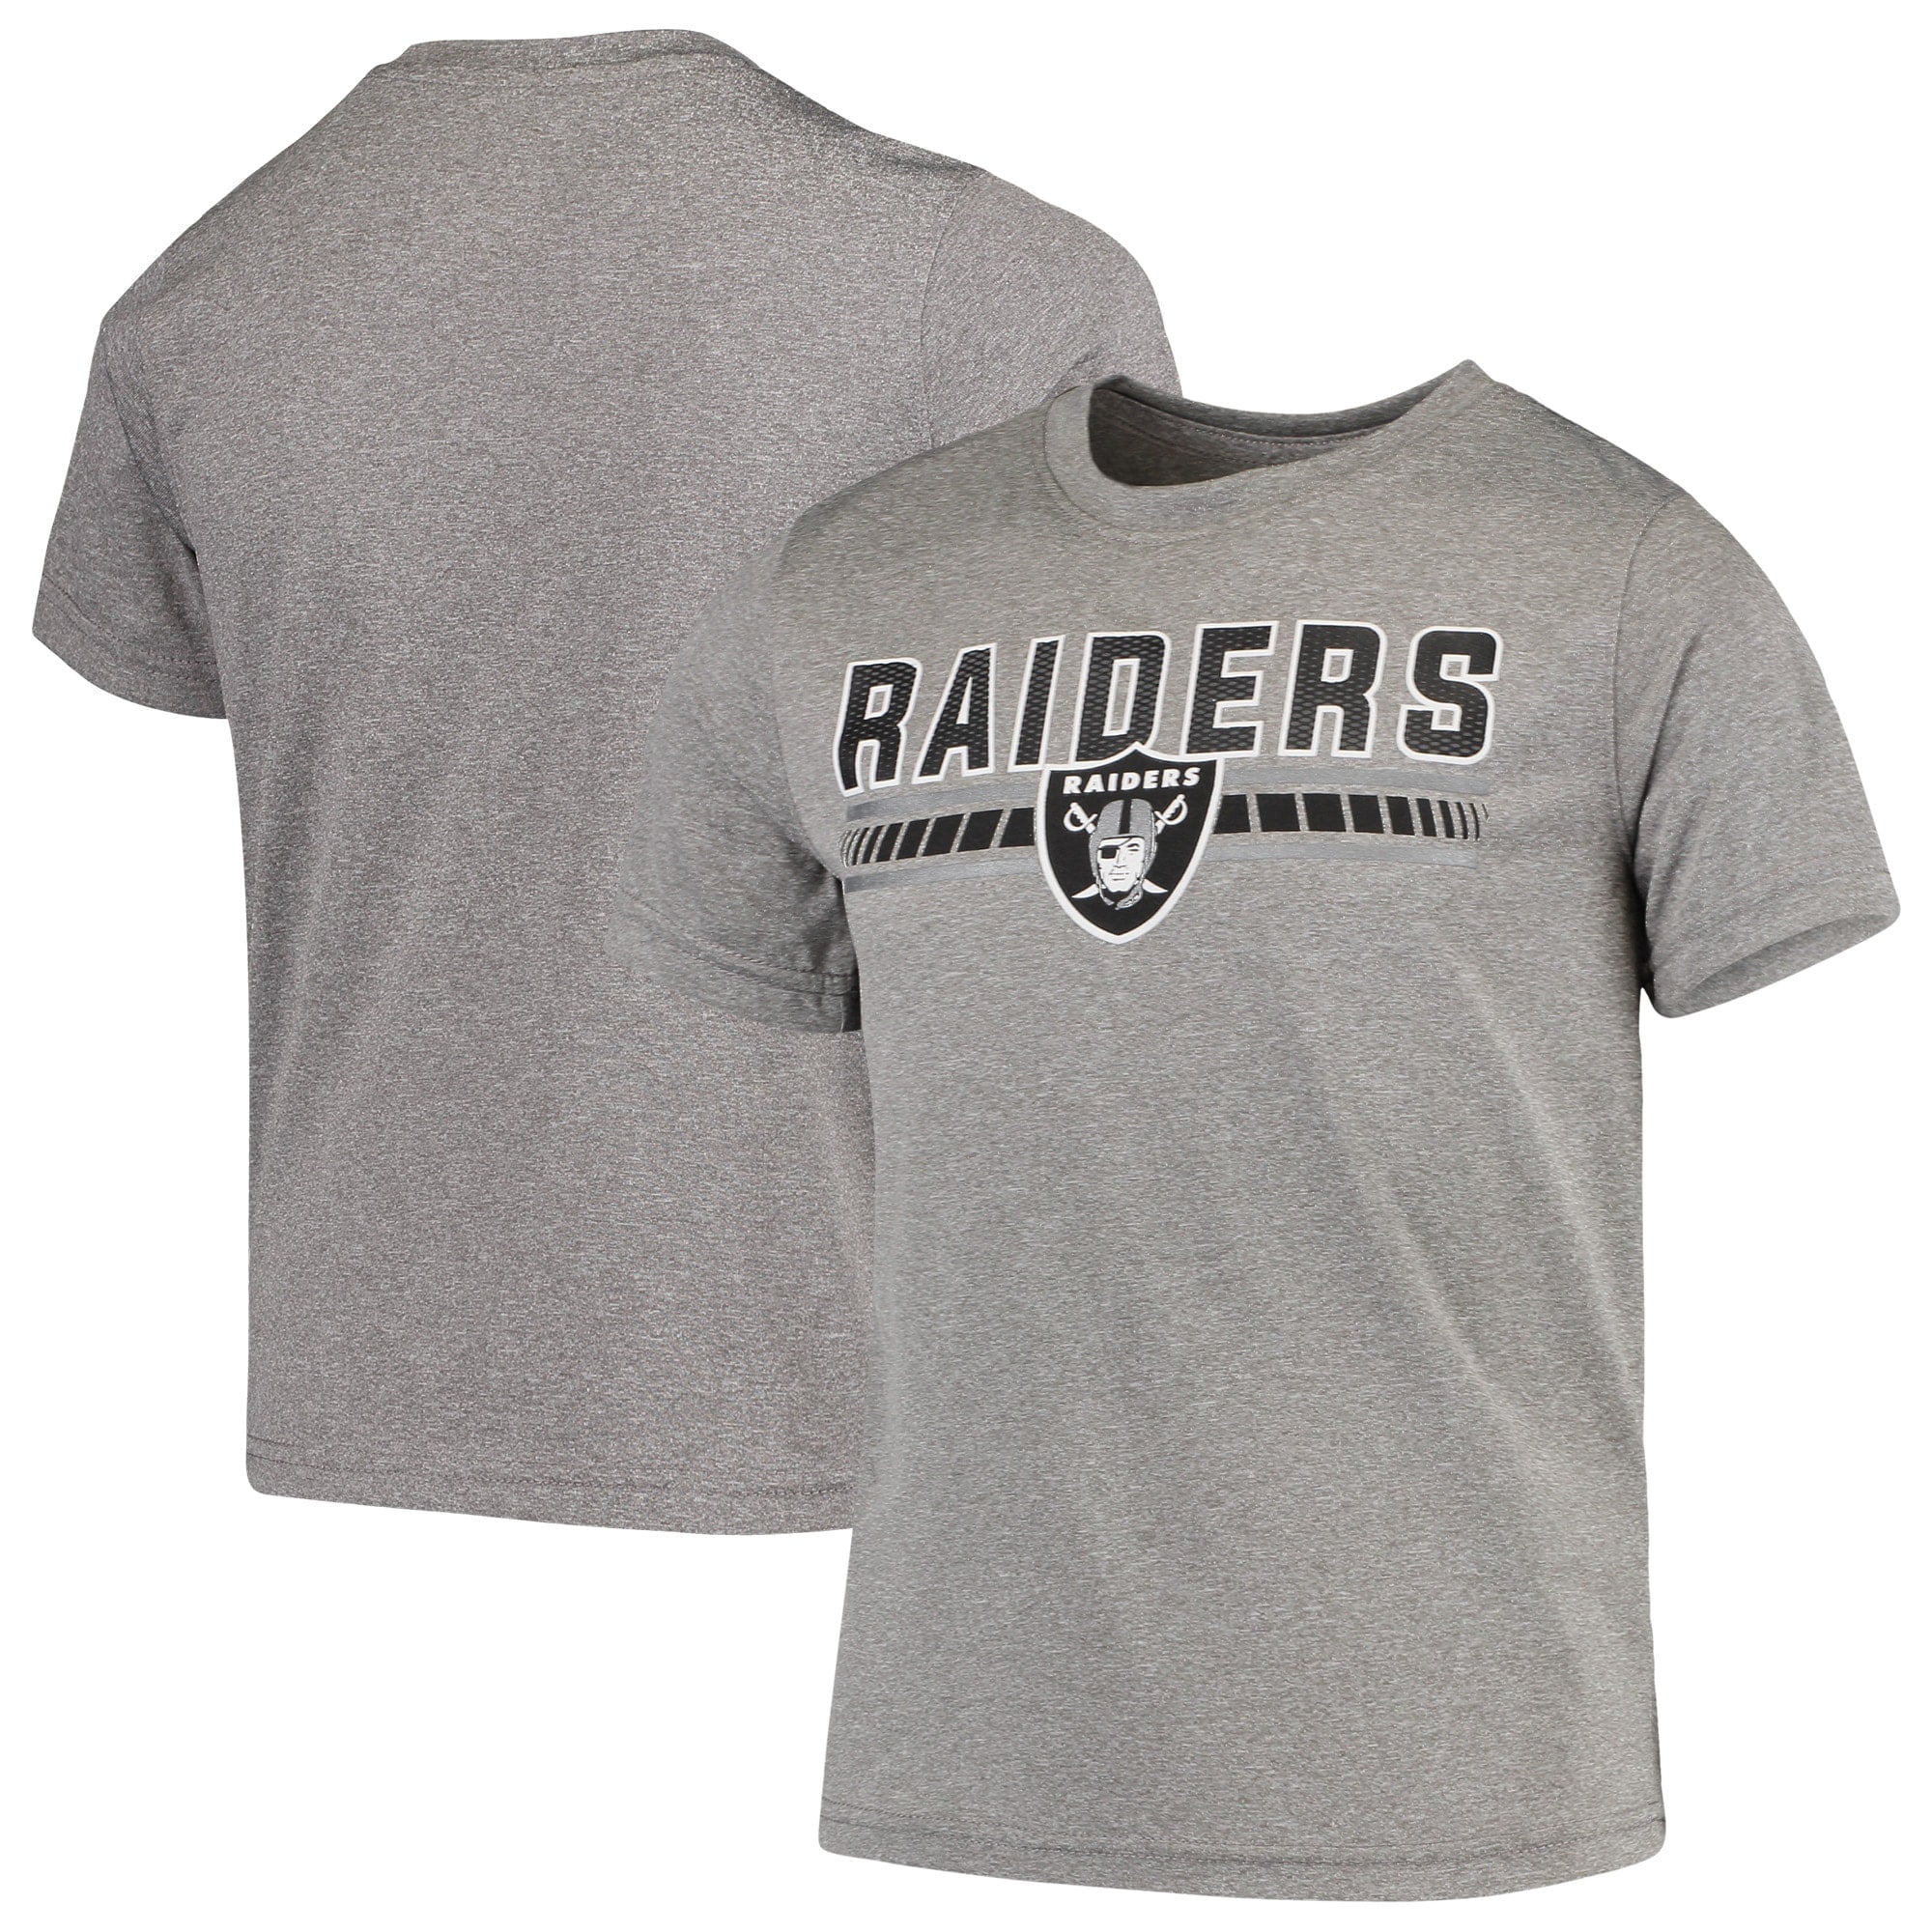 boys raiders shirt